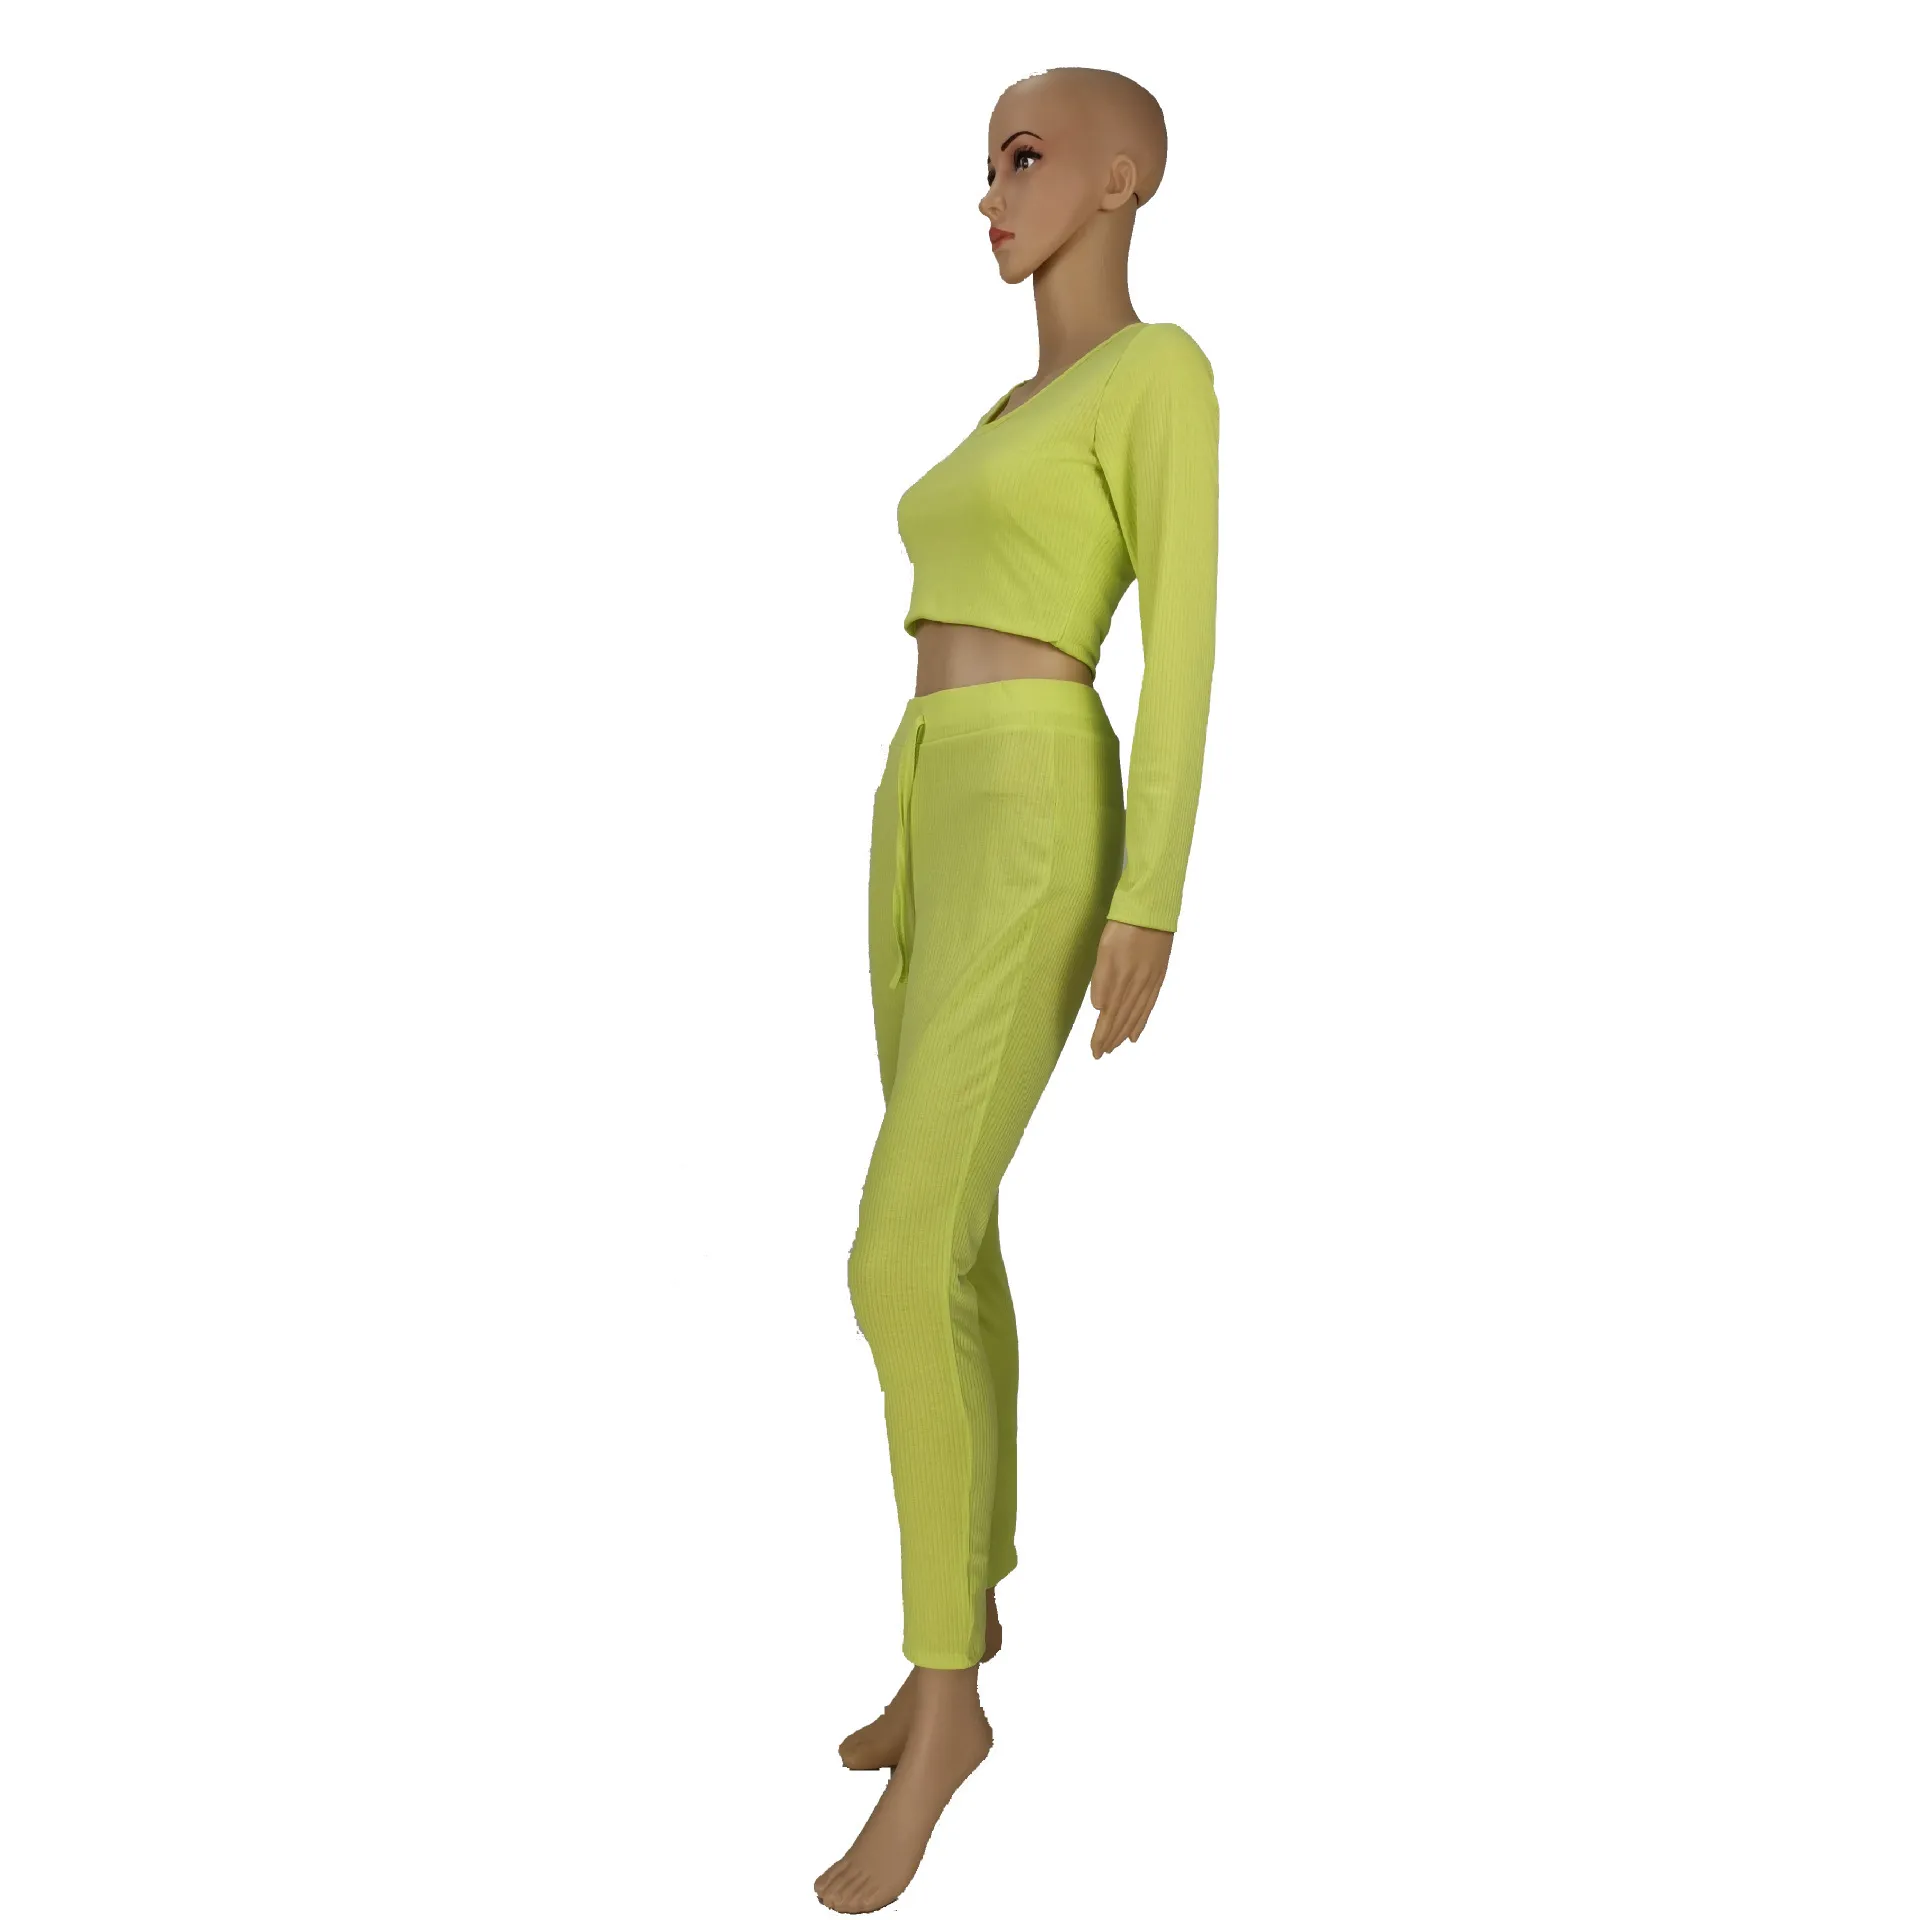 OMSJ Automne Vêtements Femmes Tricoté Fluorescent Vert À Manches Longues Crop Top + Pantalon Deux Pièces Survêtement Dames Occasionnels Oufits Mujer 210517